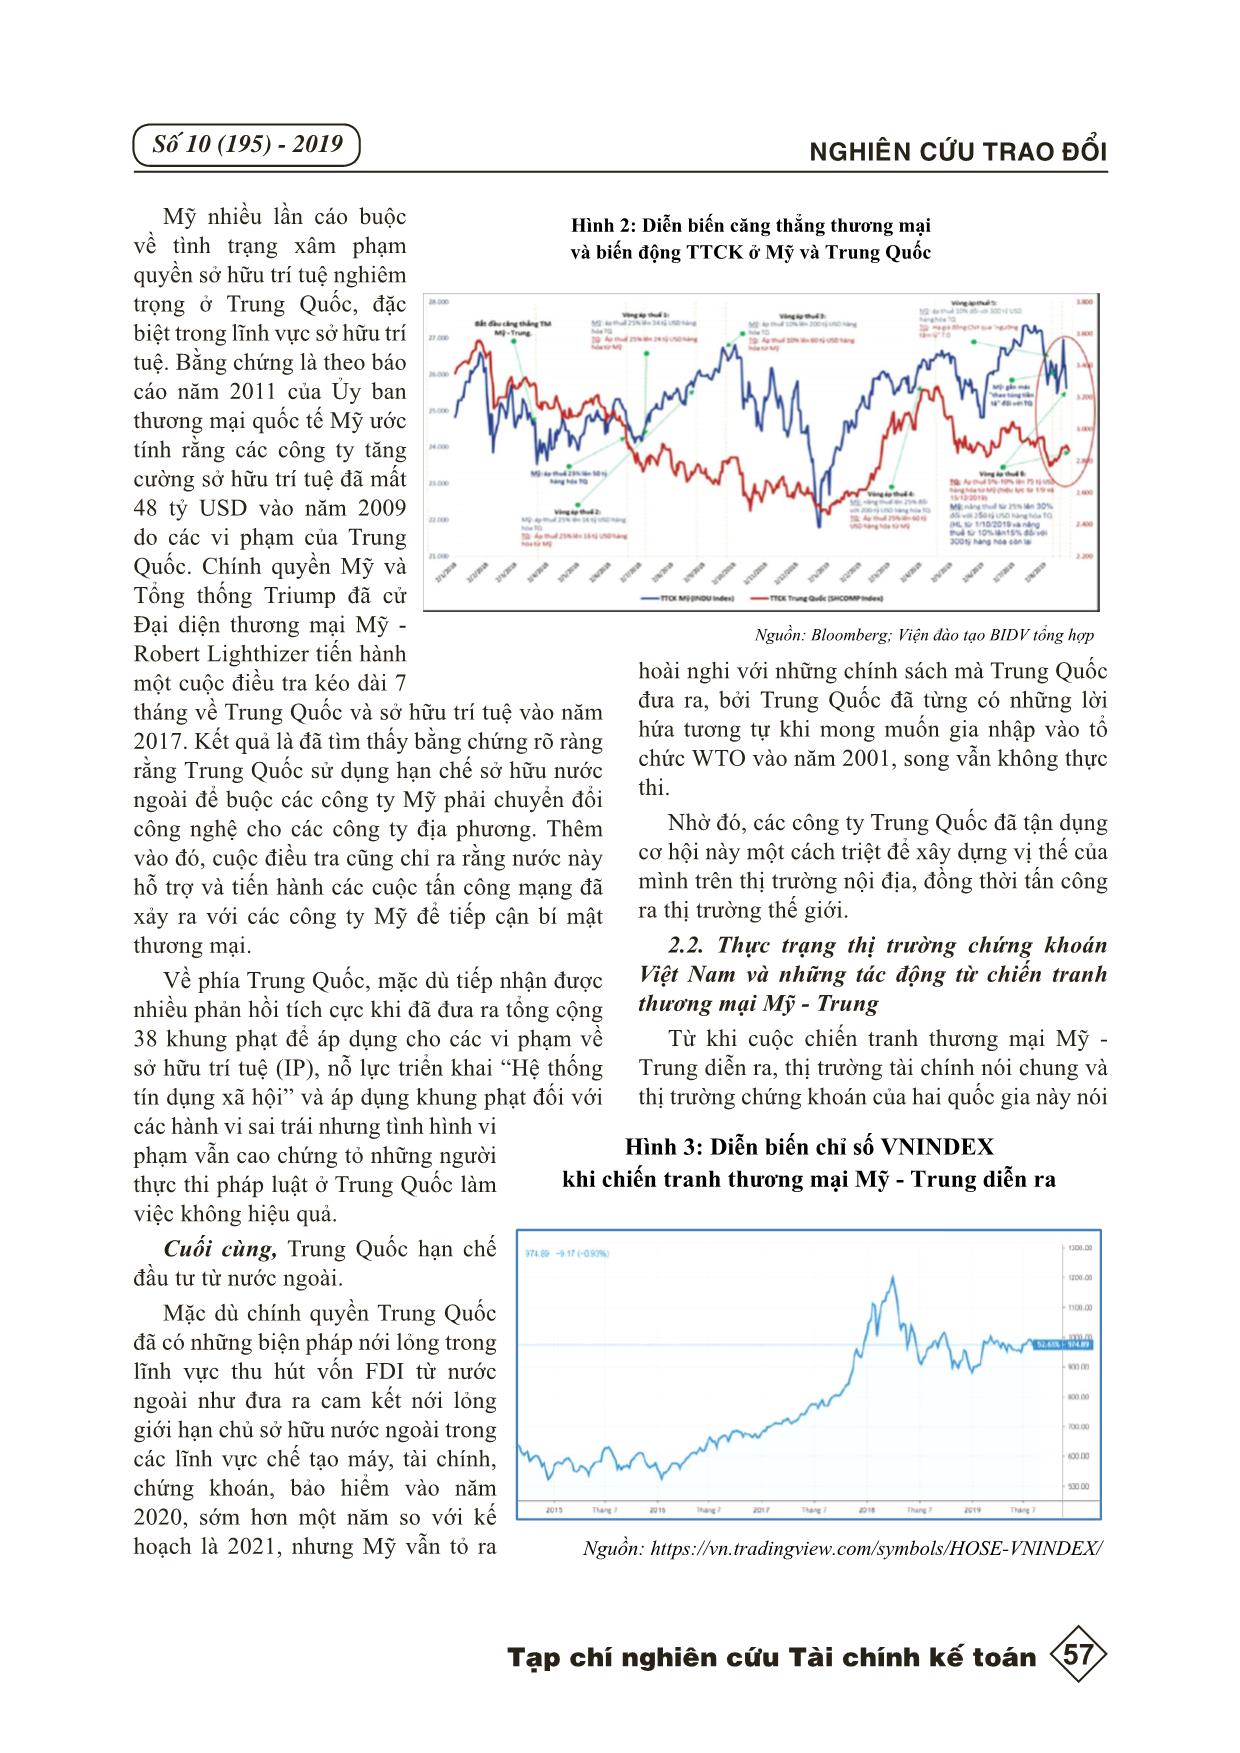 Phân tích tác động của chiến tranh thương mại Mỹ - Trung đến thị trường chứng khoán Việt Nam trang 4